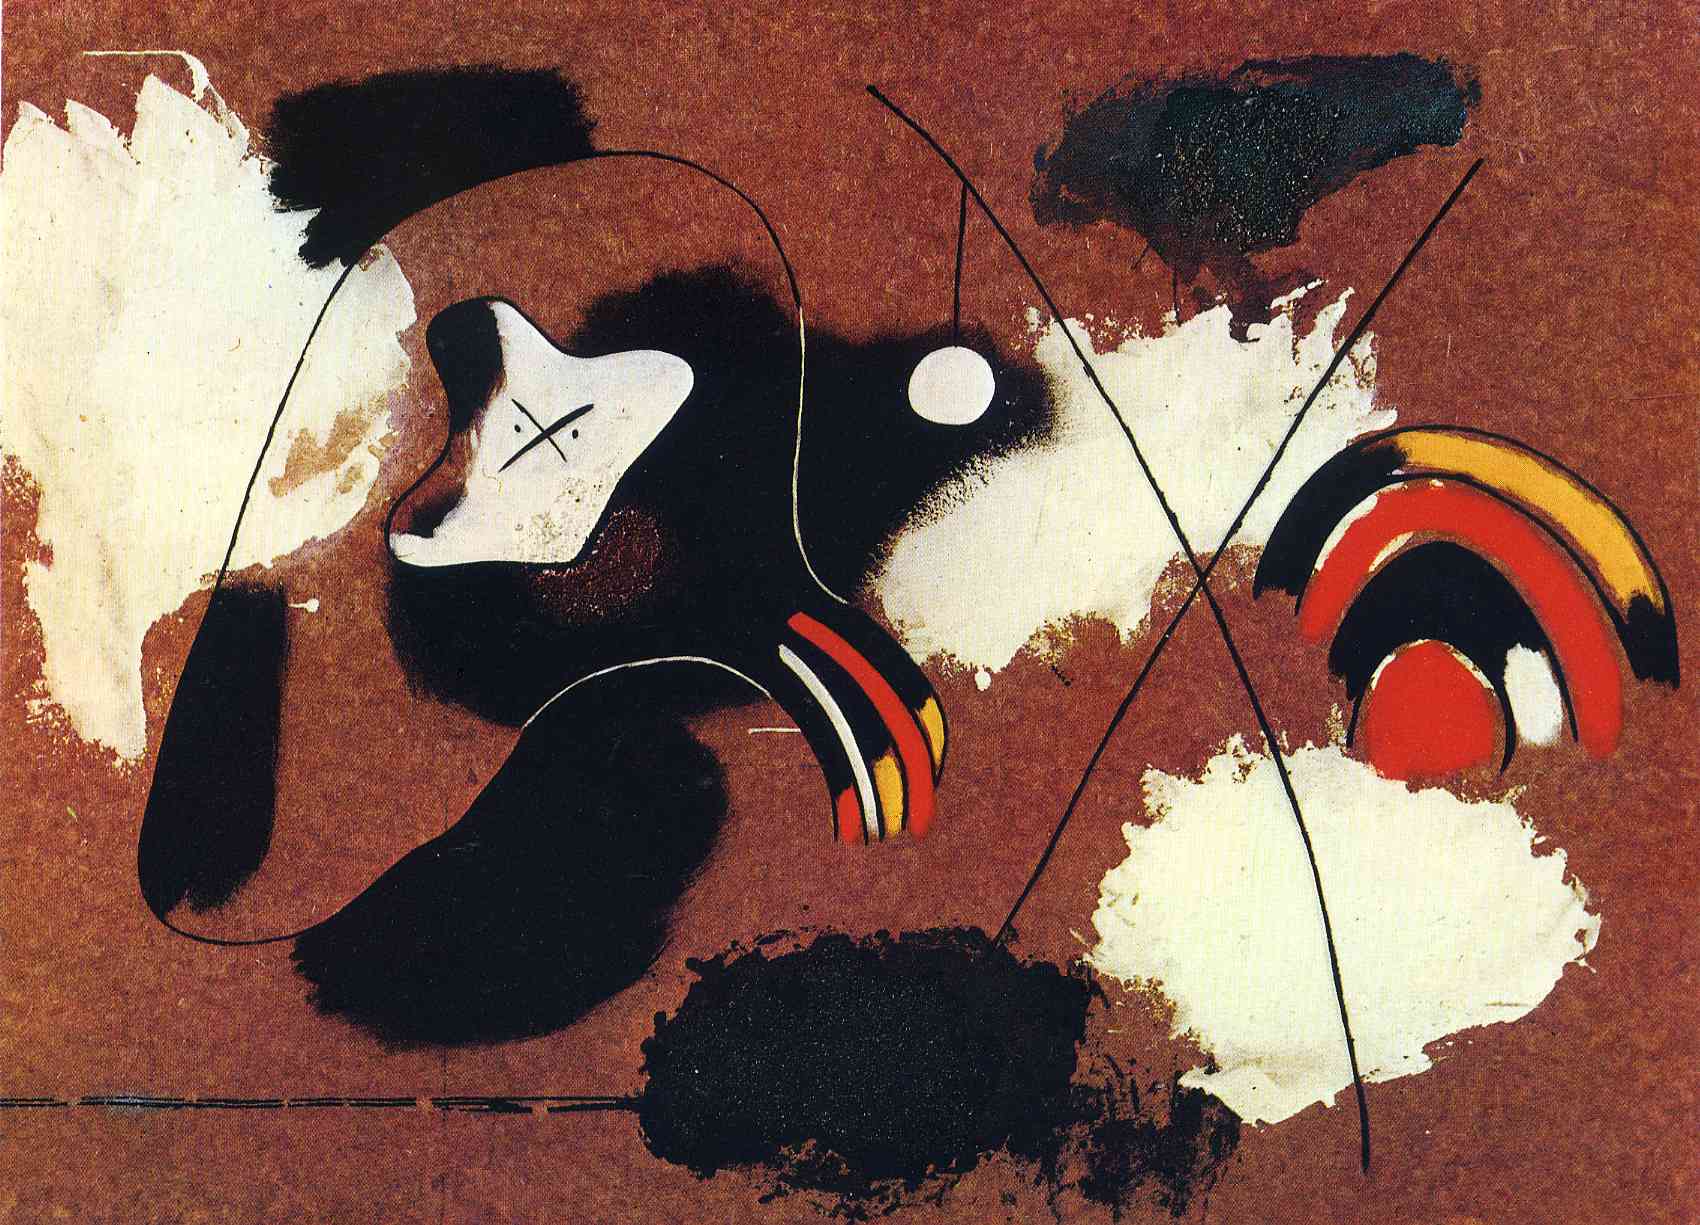 Pintura by Joan Miró - 1936 - 78 x 108 cm Fundació Joan Miró